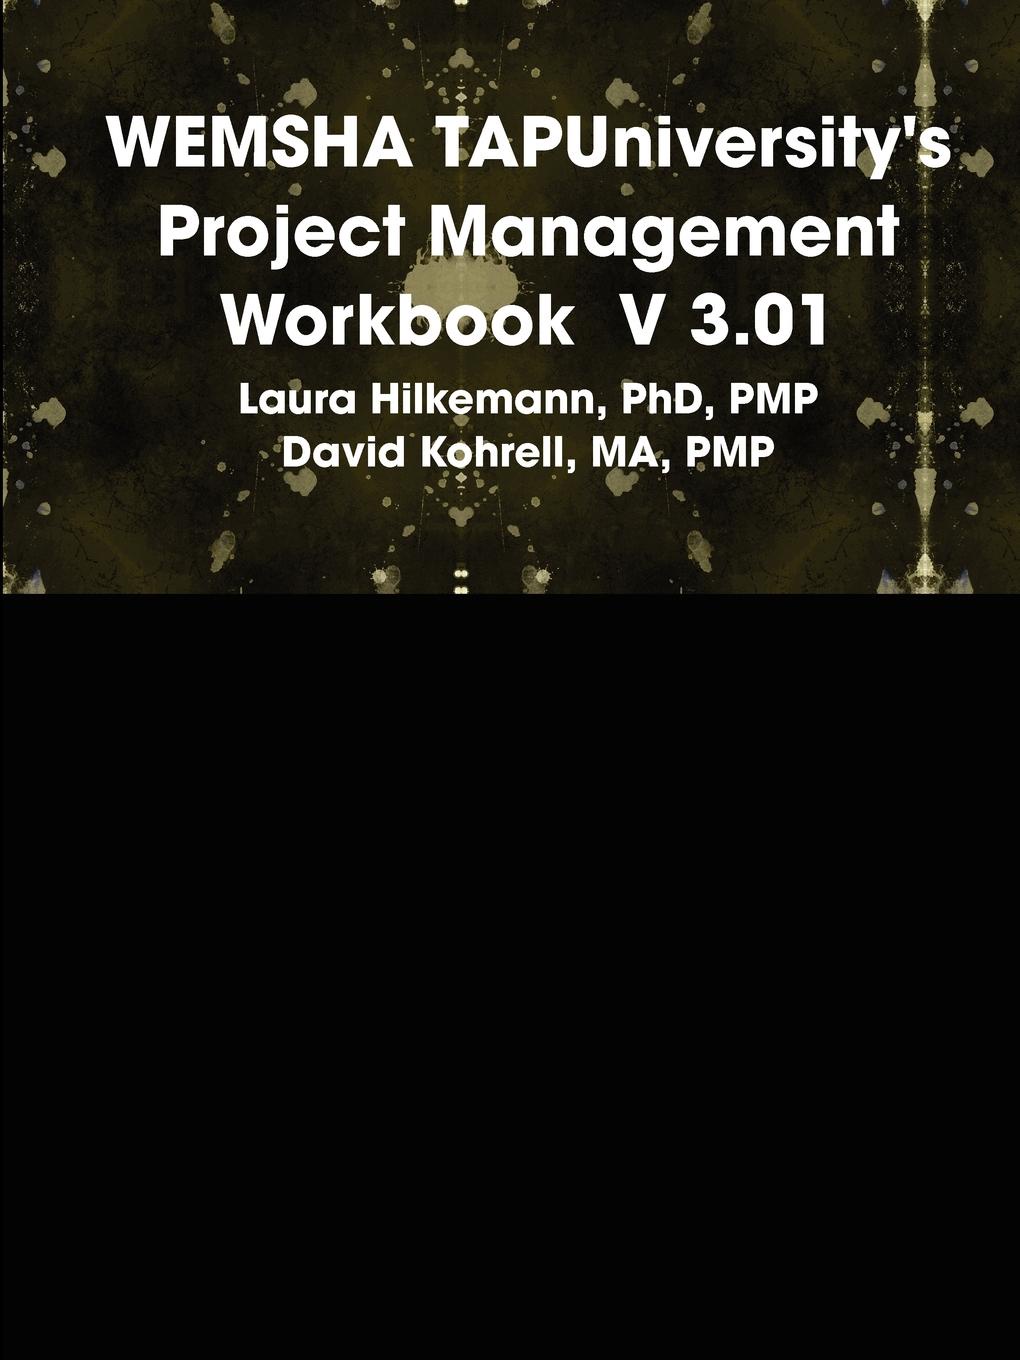 WEMSHA TAPUniversity.s Project Management Workbook  V 3.01